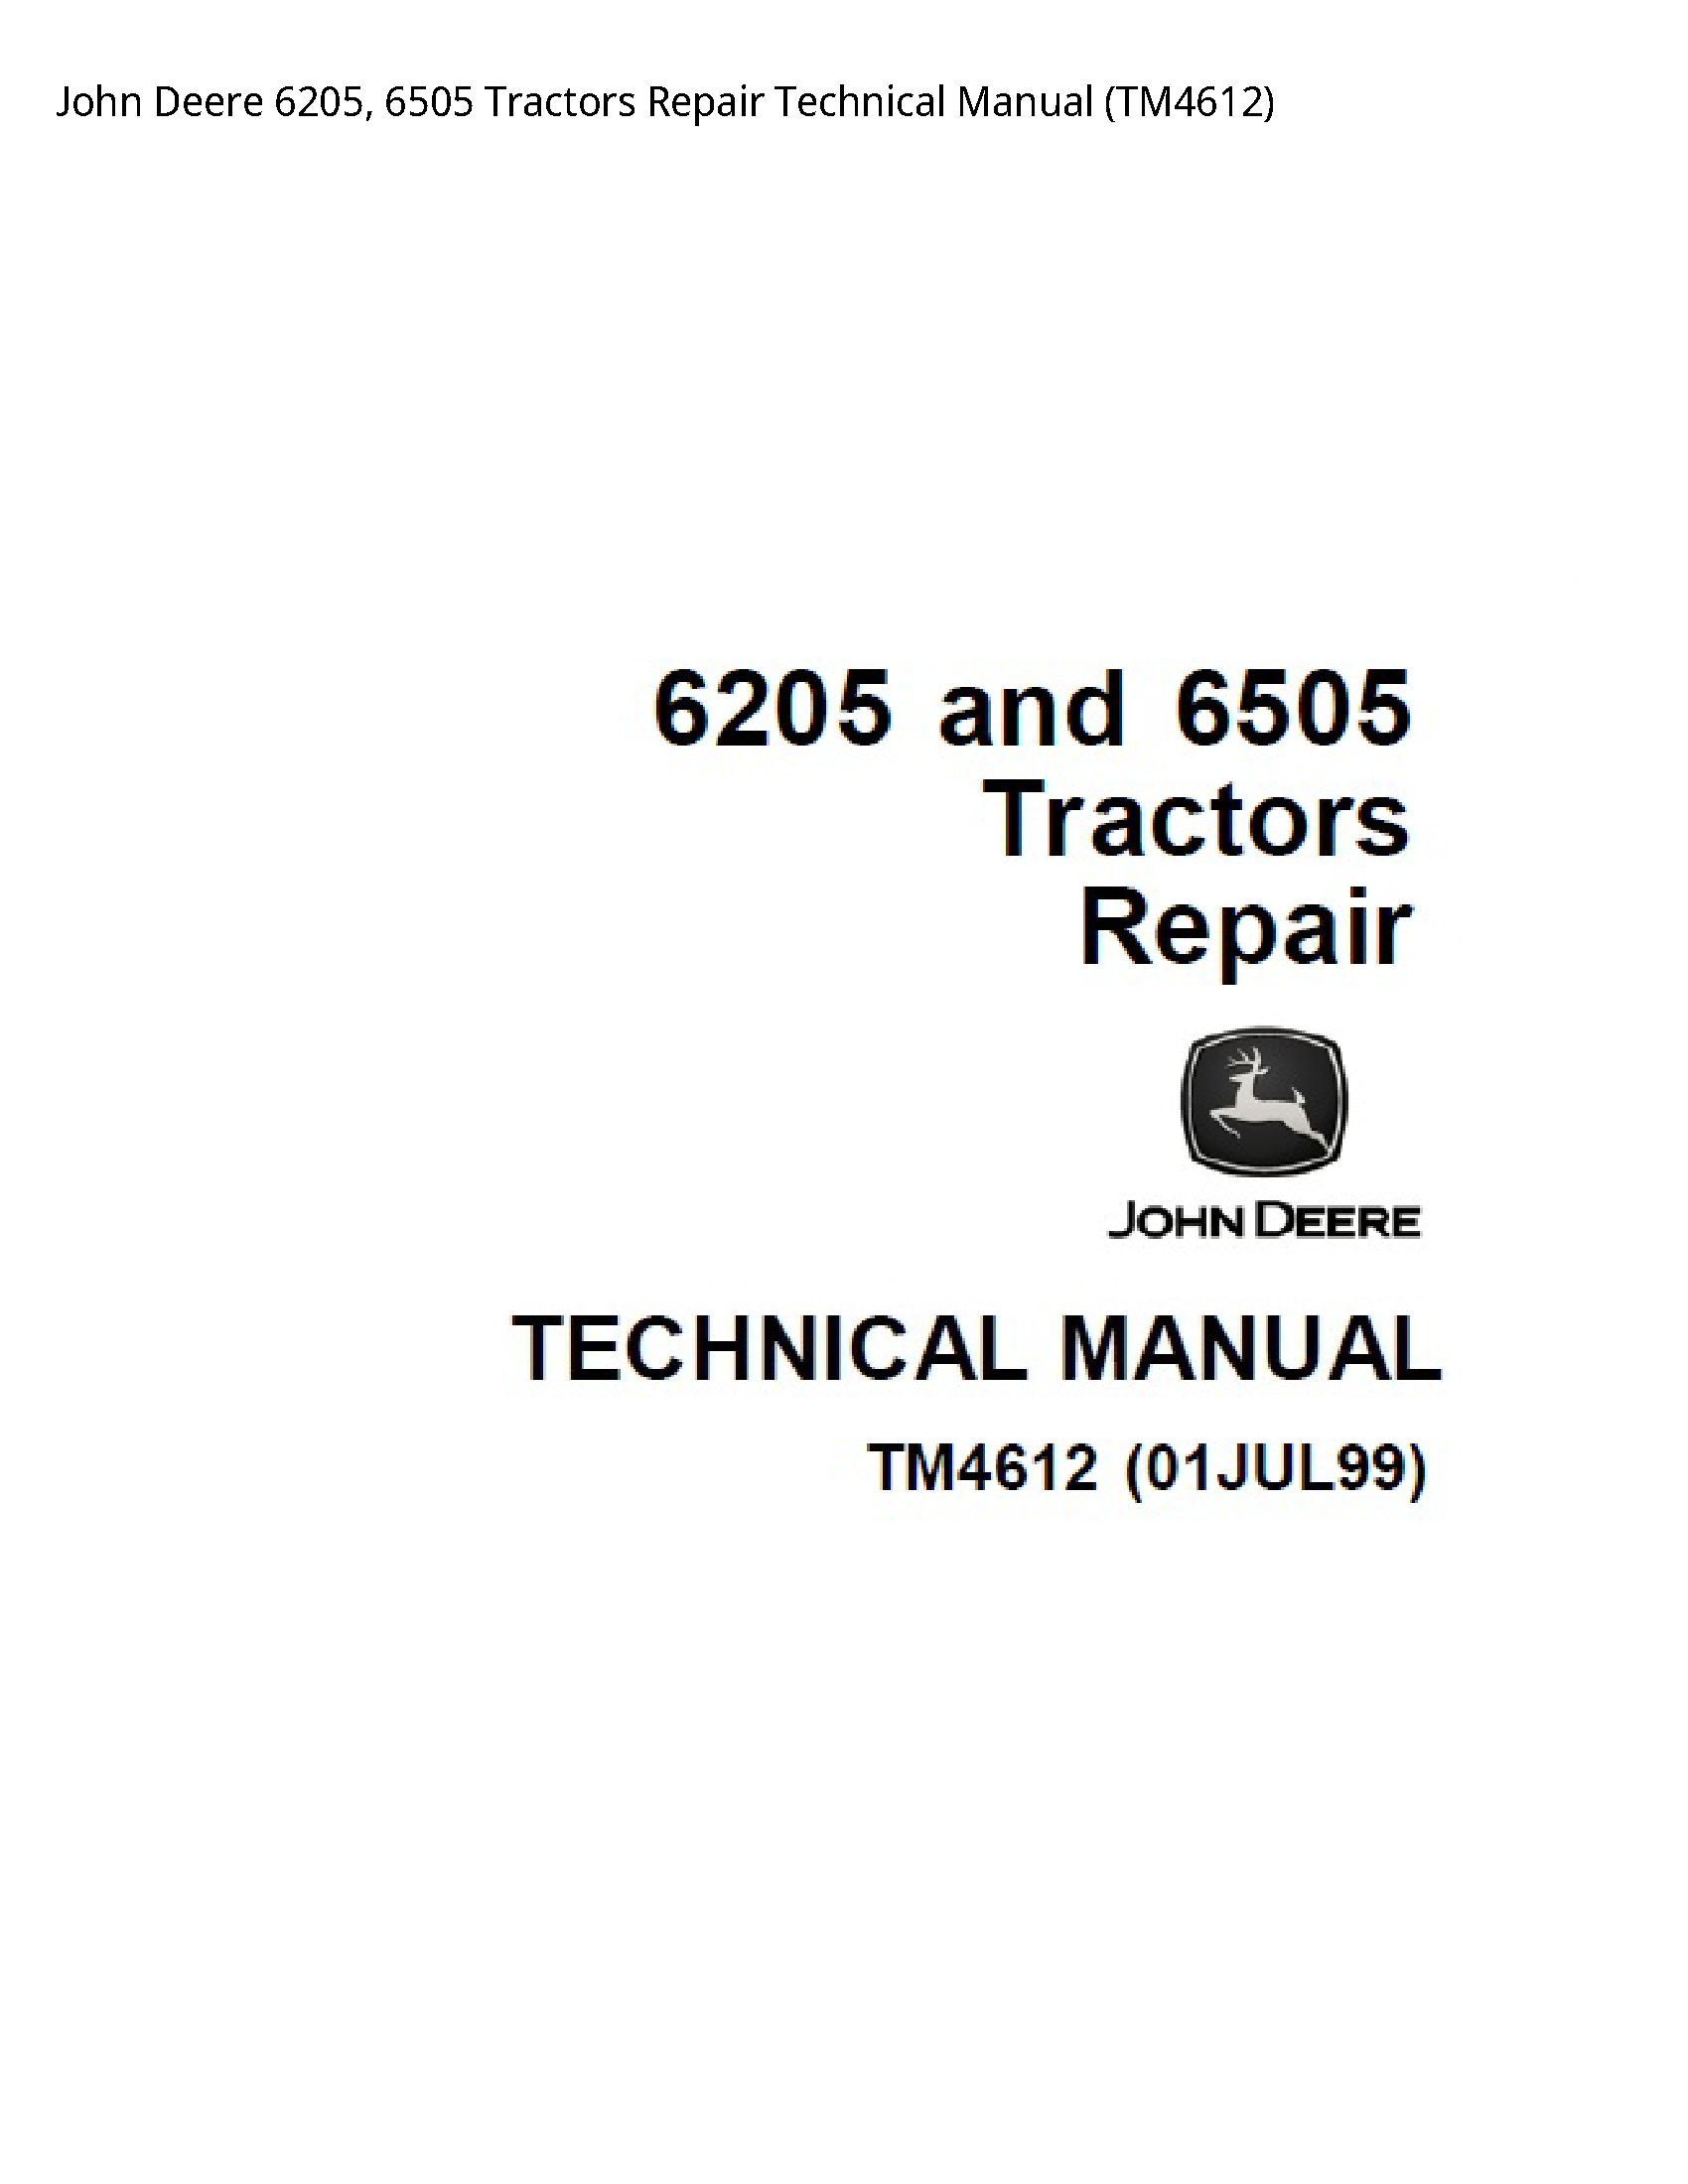 John Deere 6205 Tractors Repair Technical manual